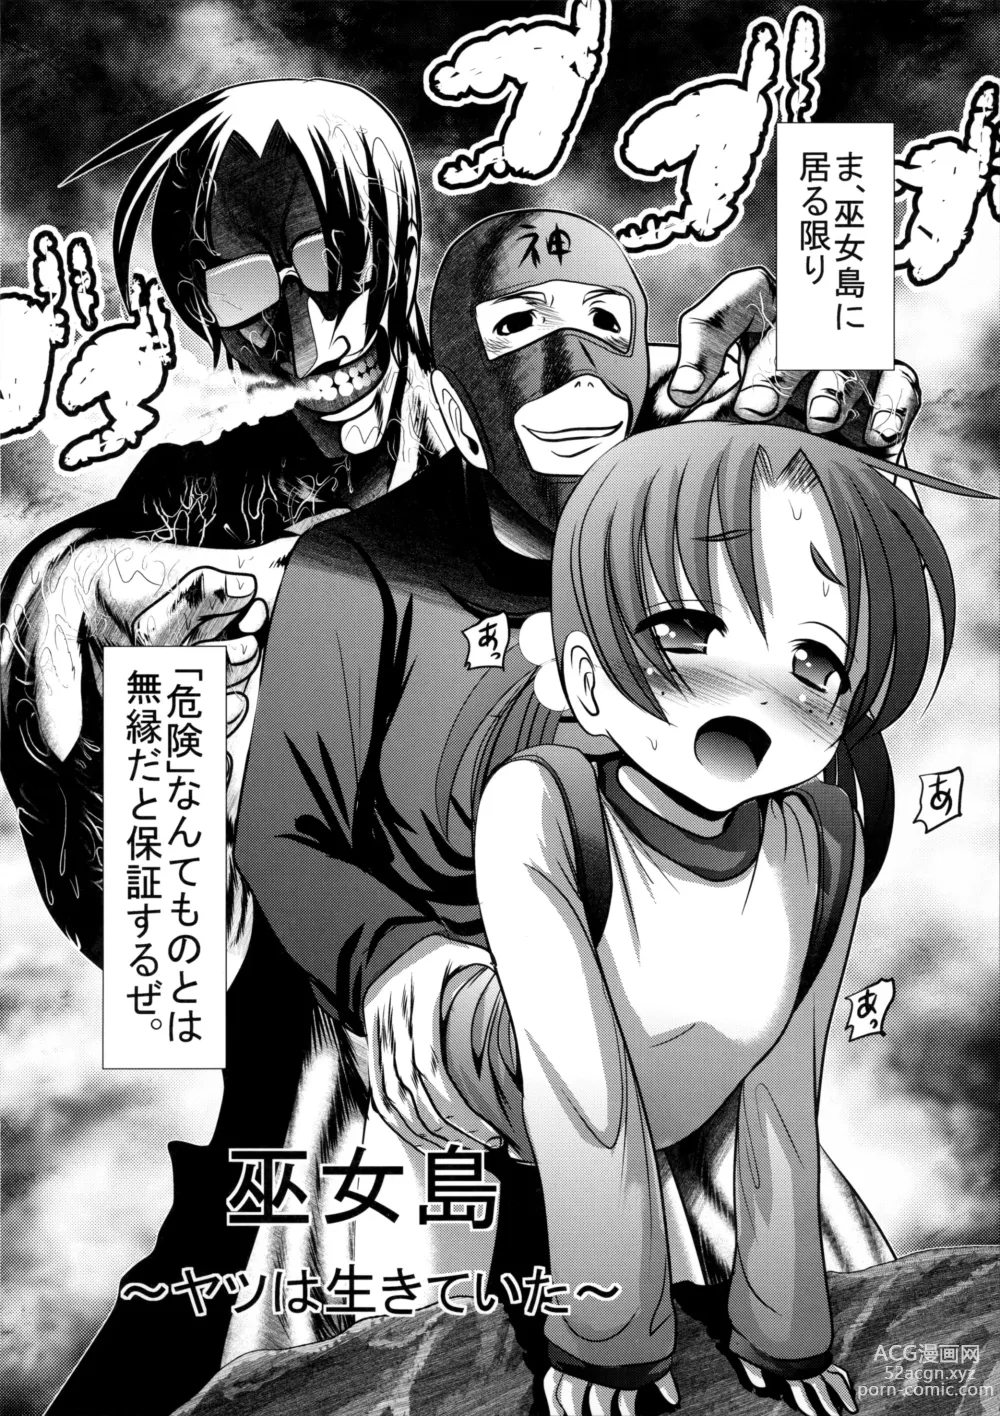 Page 2 of manga Sho-Chu-Rock 2 Toranoana Gentei 8P Shousasshi Mikoshima ~Yatsu wa Ikiteita~